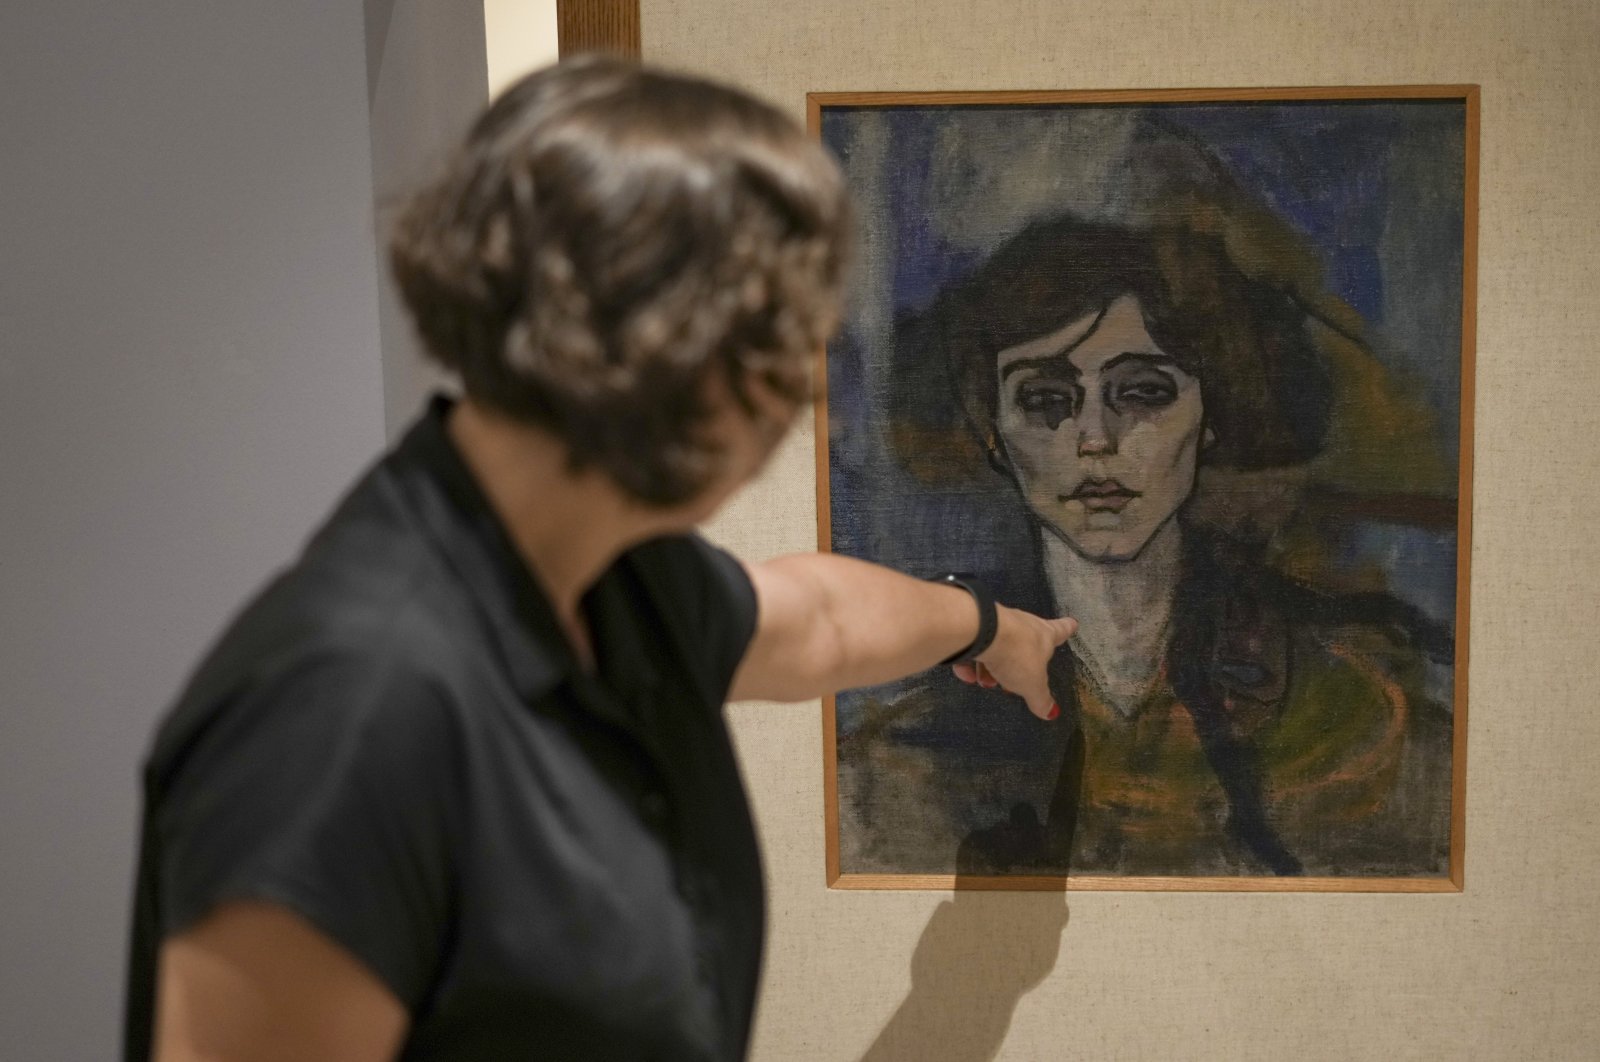 Kurator museum Israel mengungkap sketsa tersembunyi dalam karya Modigliani